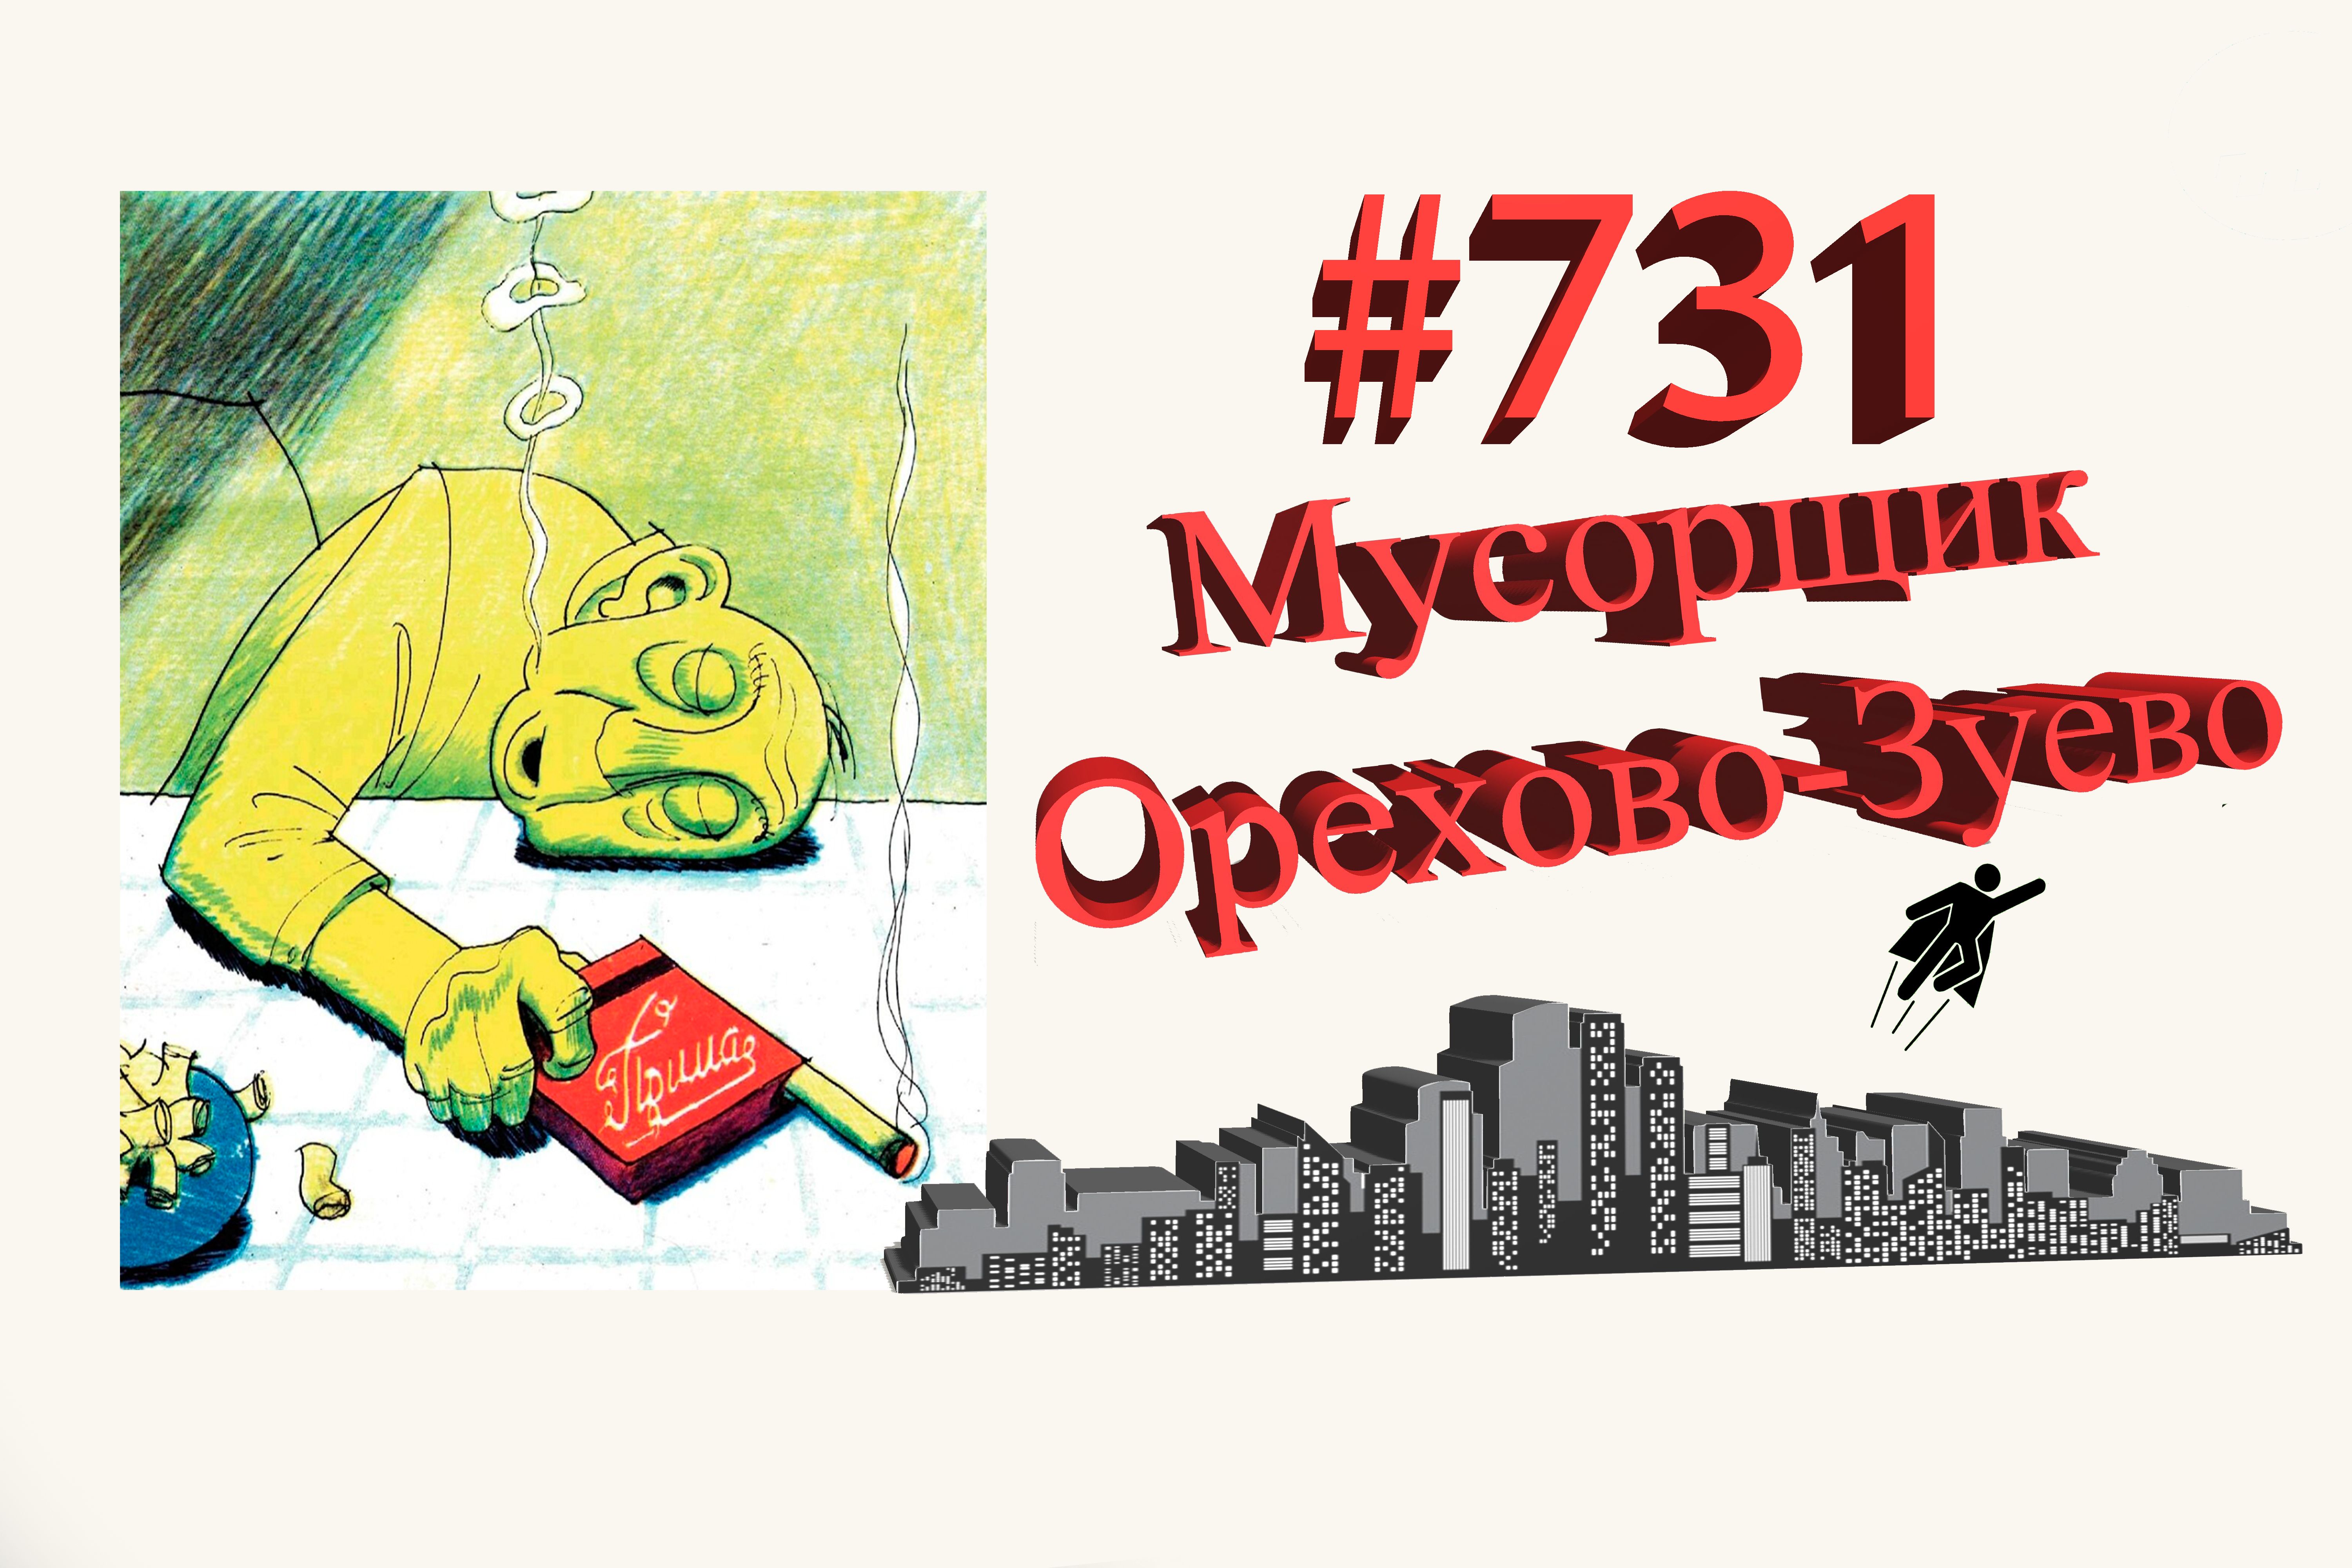 Подмосковье сегодня #731 Орехово-Зуево